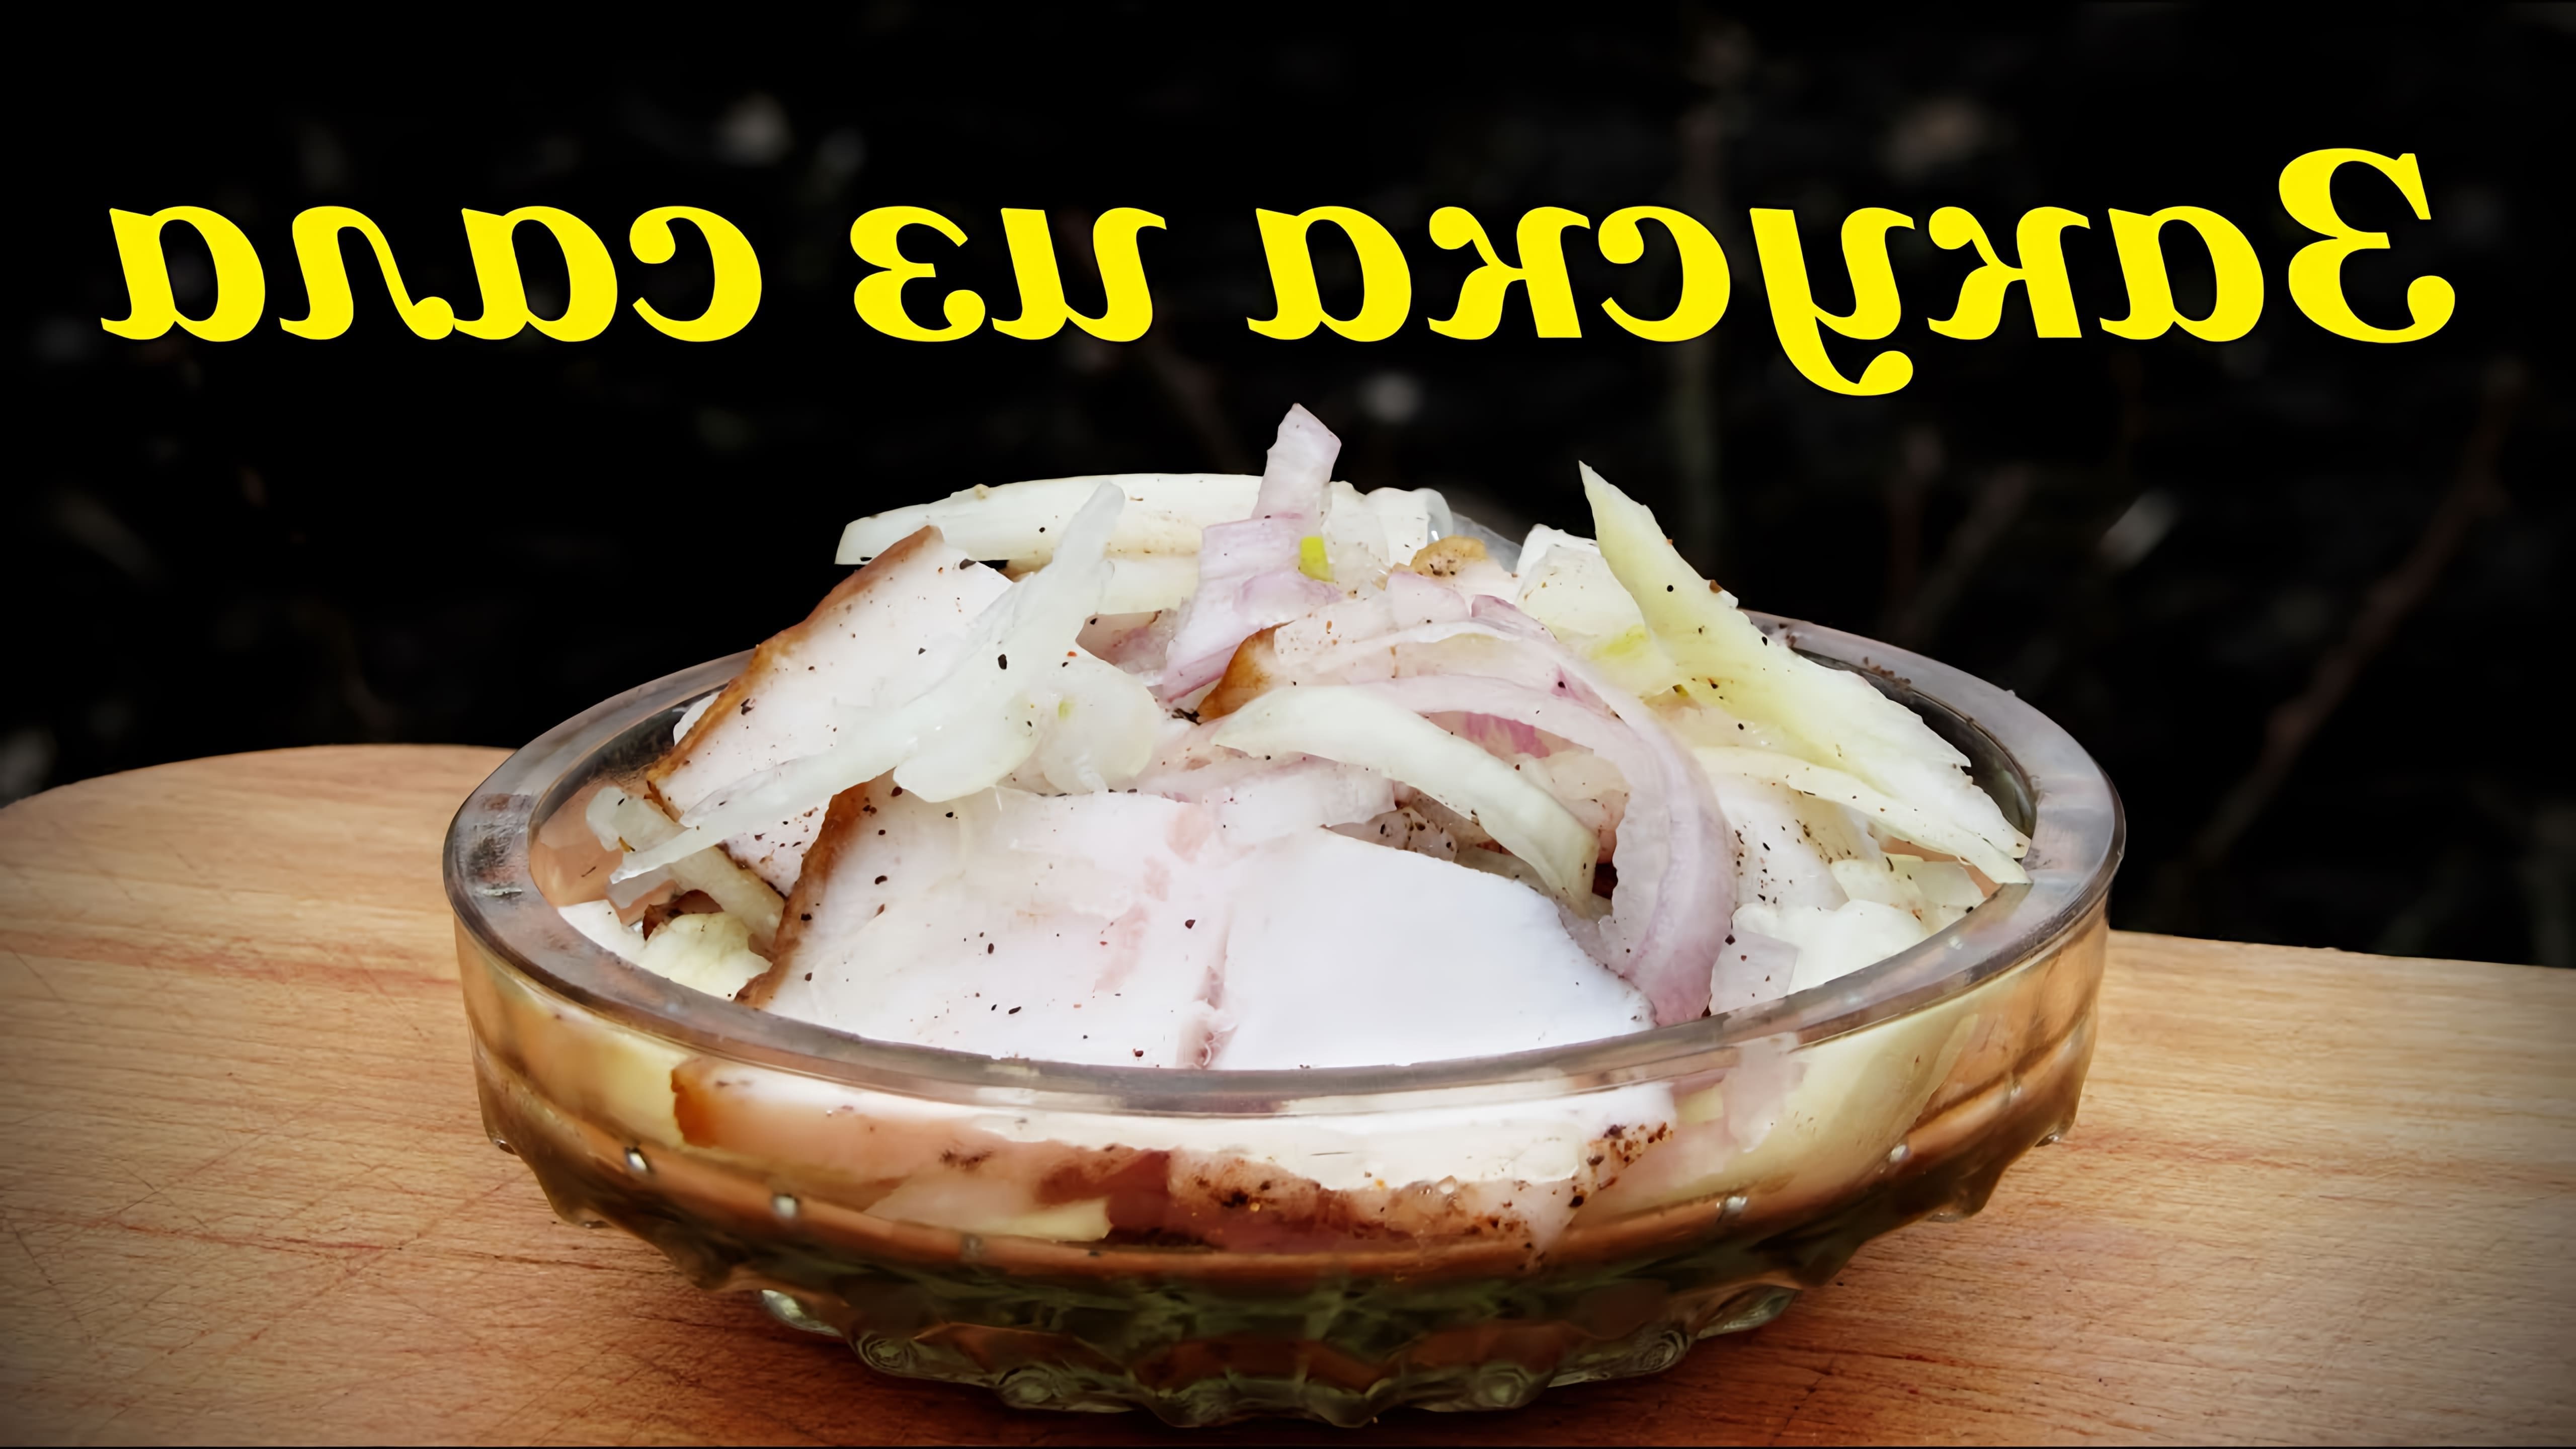 В этом видео демонстрируется простой и быстрый рецепт приготовления сала, которое может быть использовано как закуска